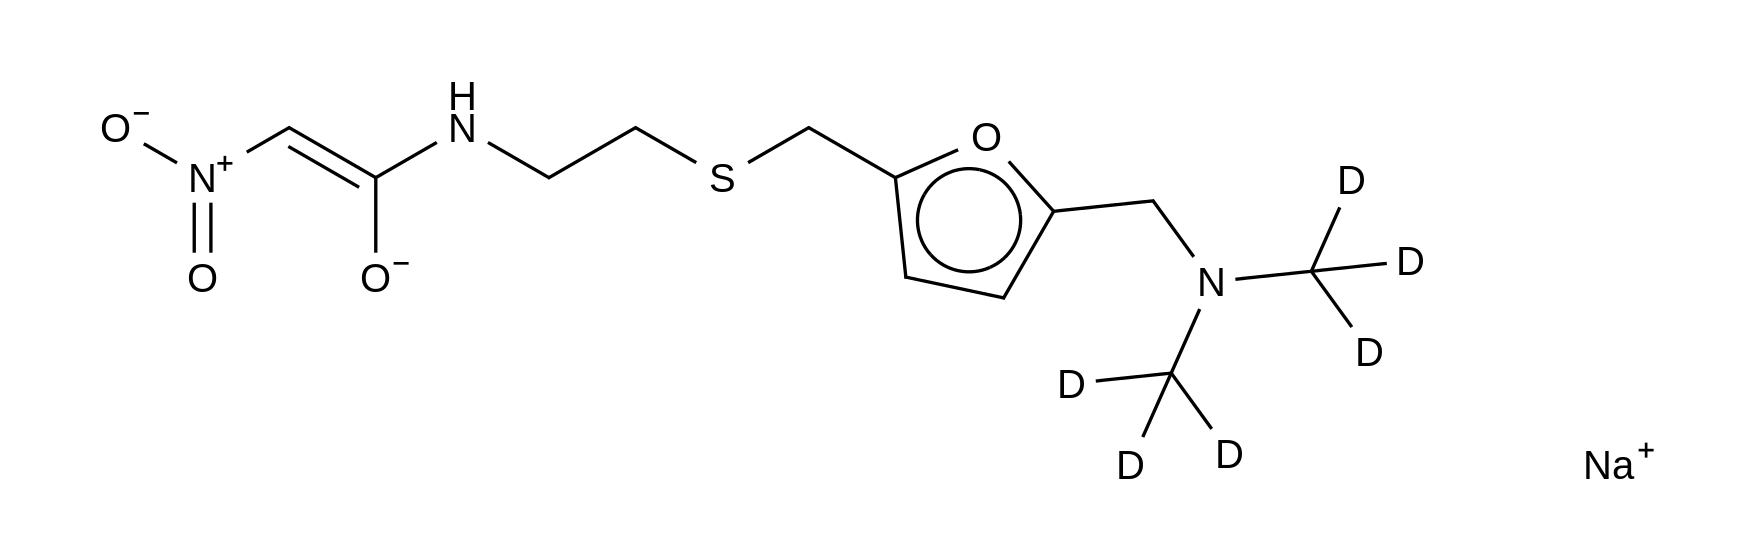 Demethylamino Ranitidine-d<sub>6</sub> Acetamide Sodium